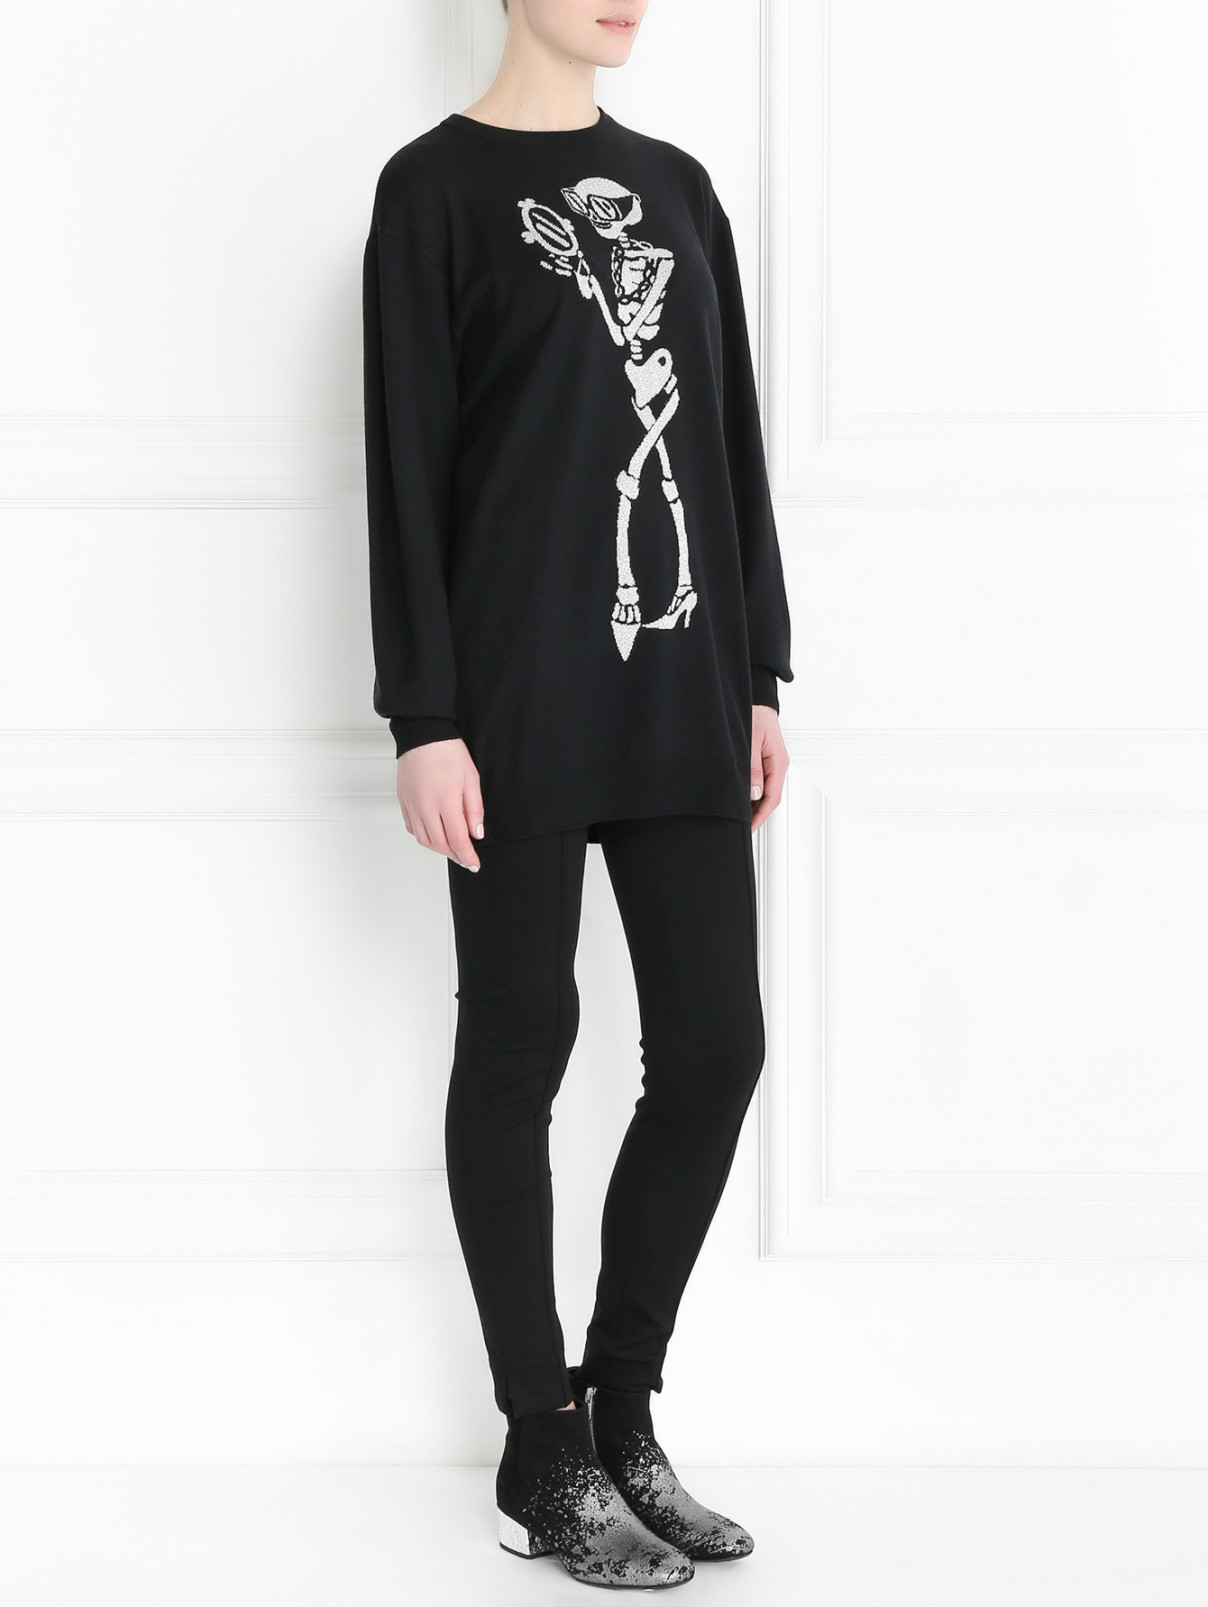 Джемпер из шерсти с узором и длинным рукавом Moschino Couture  –  Модель Общий вид  – Цвет:  Черный